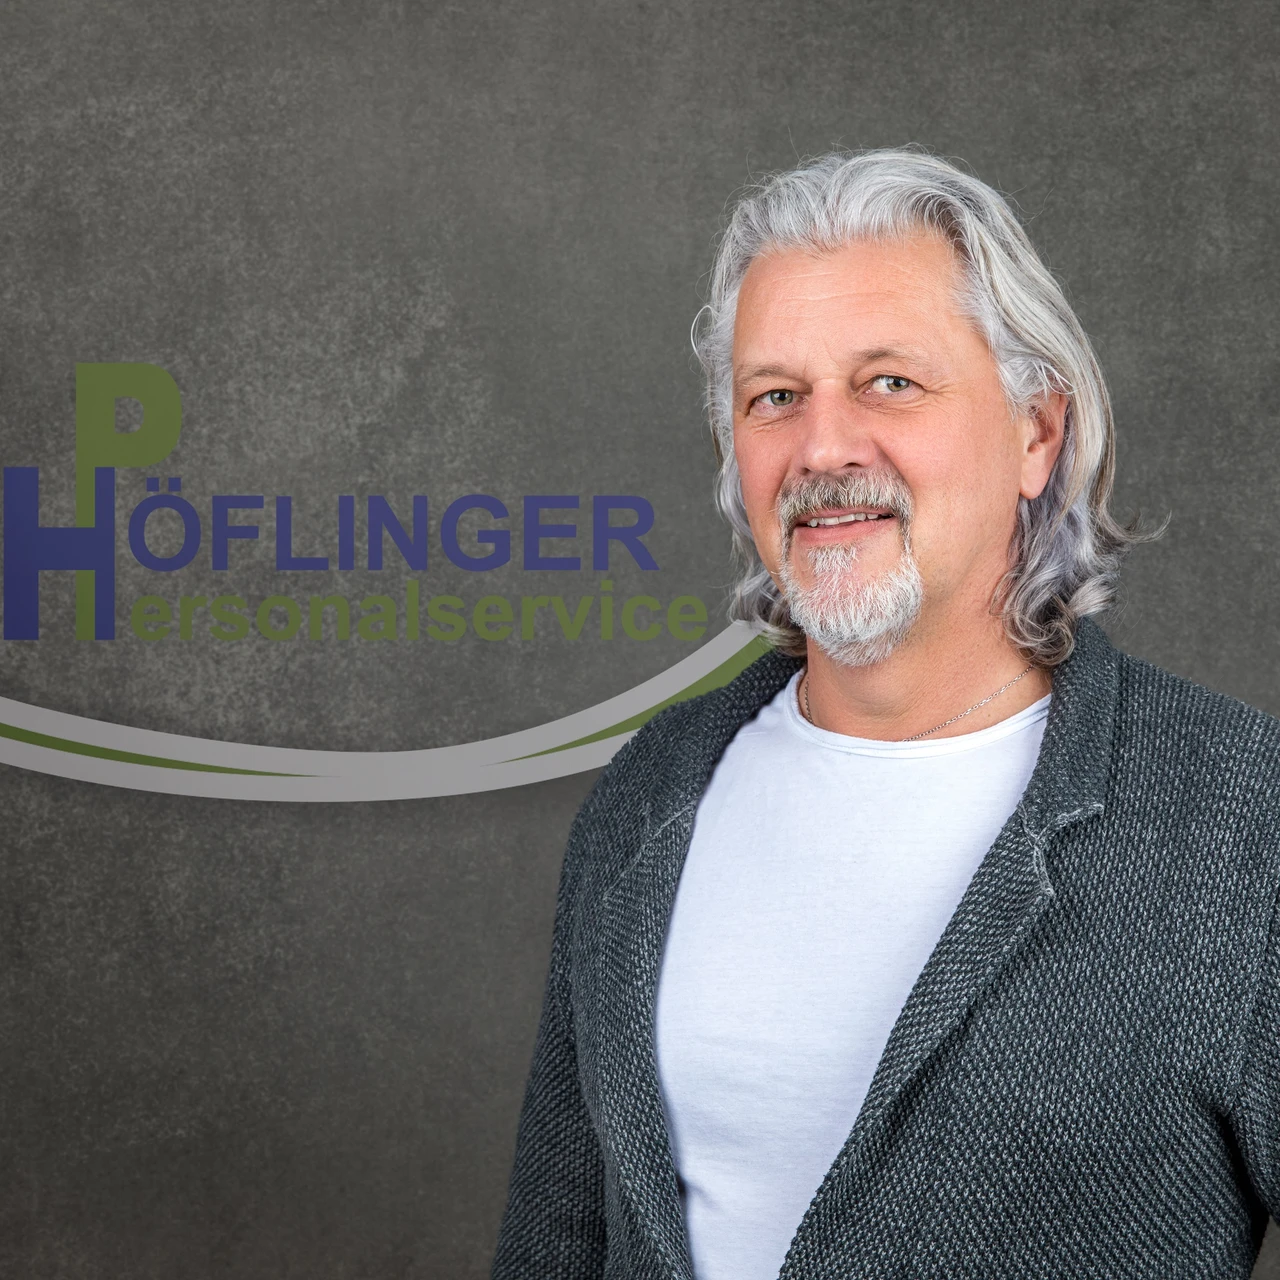 (c) Hoeflinger-personalservice.at